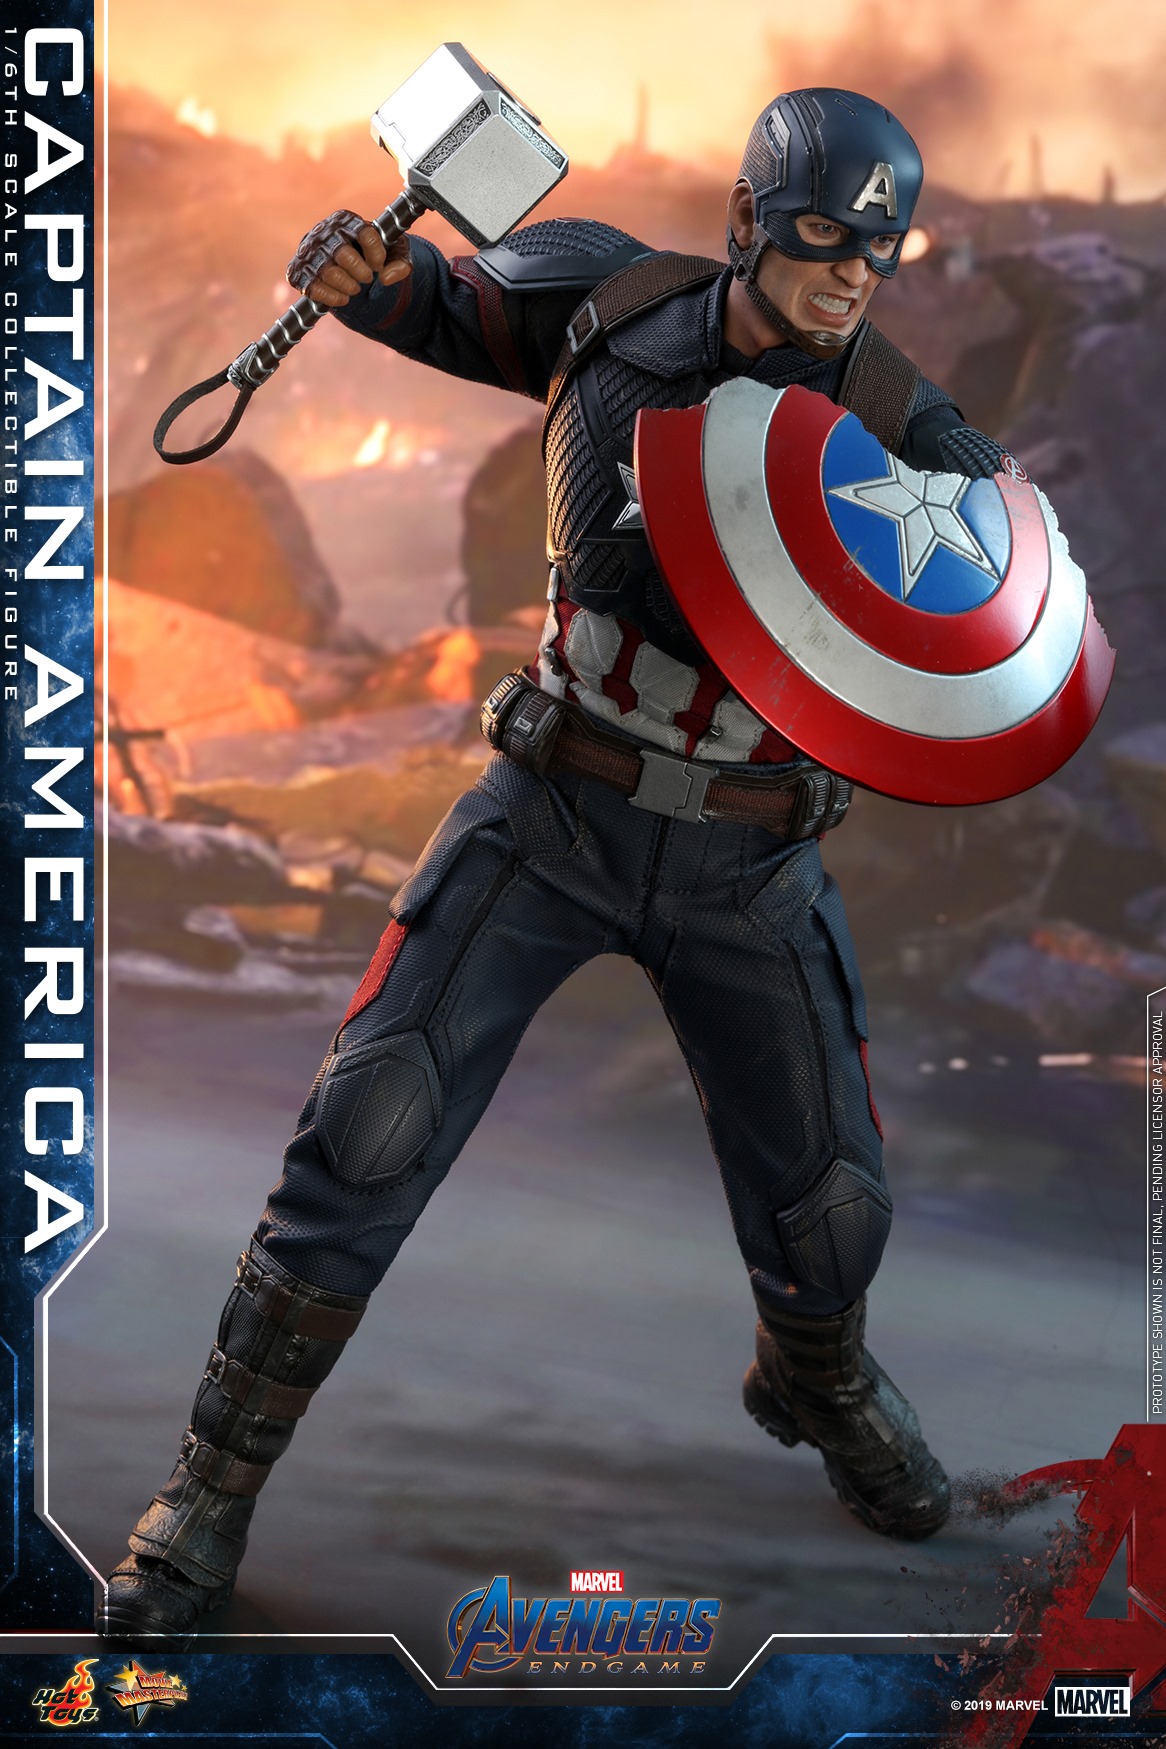 Hot-Toys-Avengers-Endgame-Captain-America-010.jpg